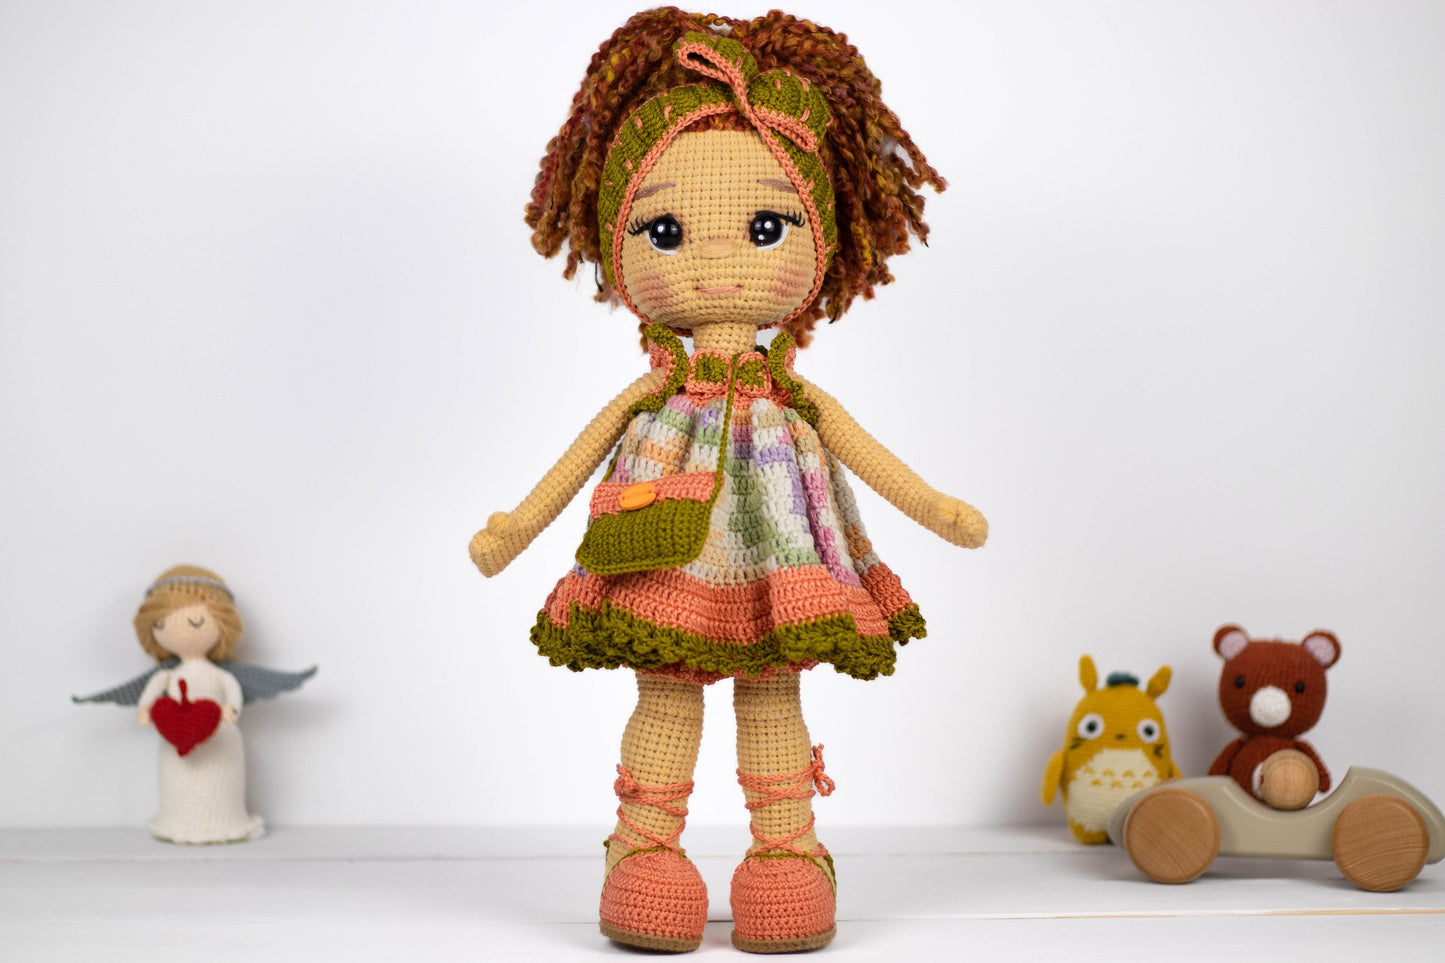 Crochet Doll Curly Hair Girl with Headband, Amigurumi Pretty Girl Doll, Plush Doll with Clutch, Knit Doll Toy, Handmade Stuffed Doll Gift